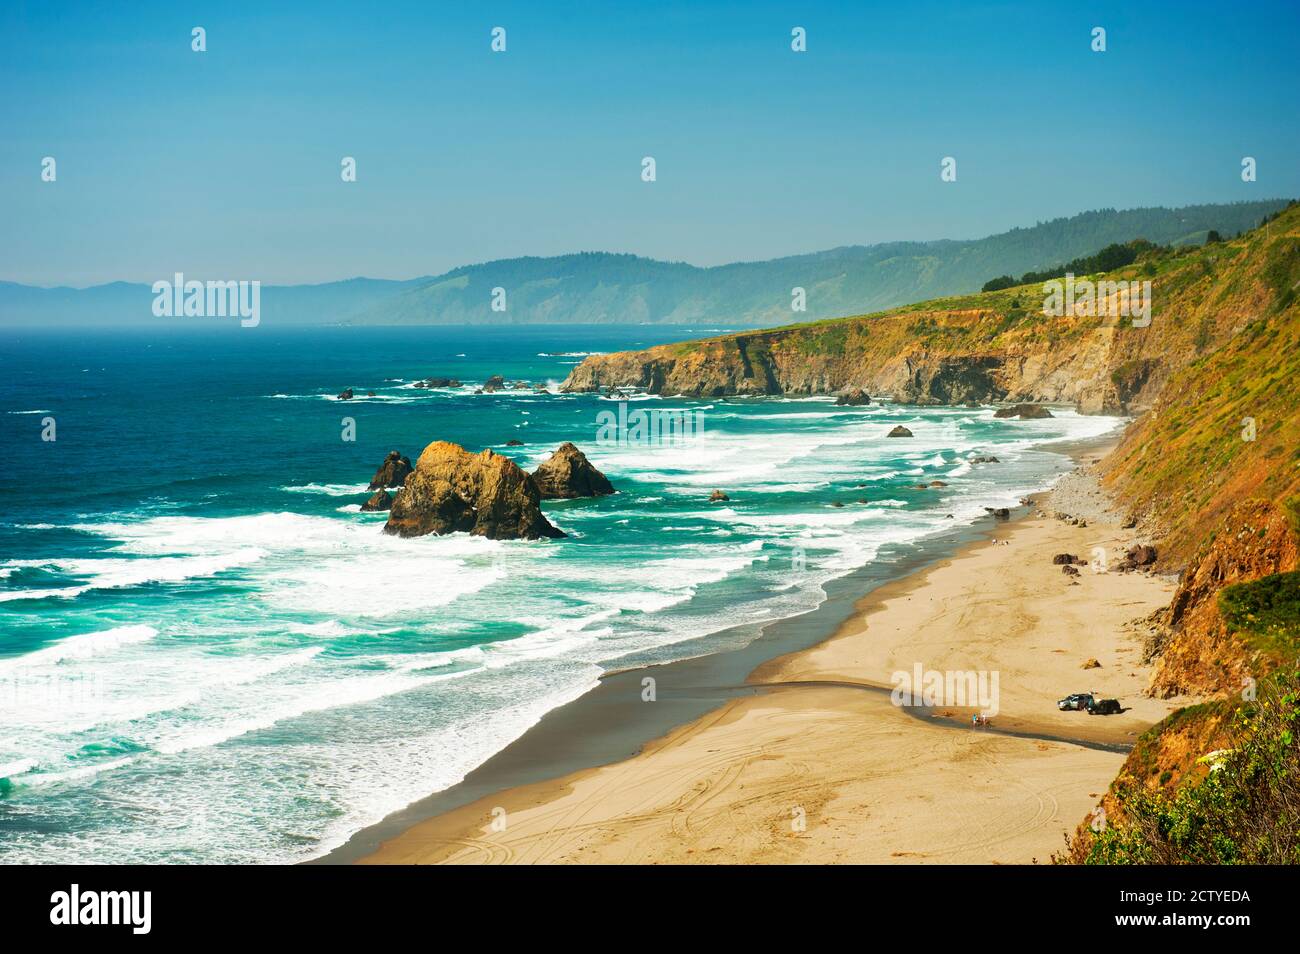 Practique surf en la costa del Pacífico, norte de California, EE.UU Foto de stock